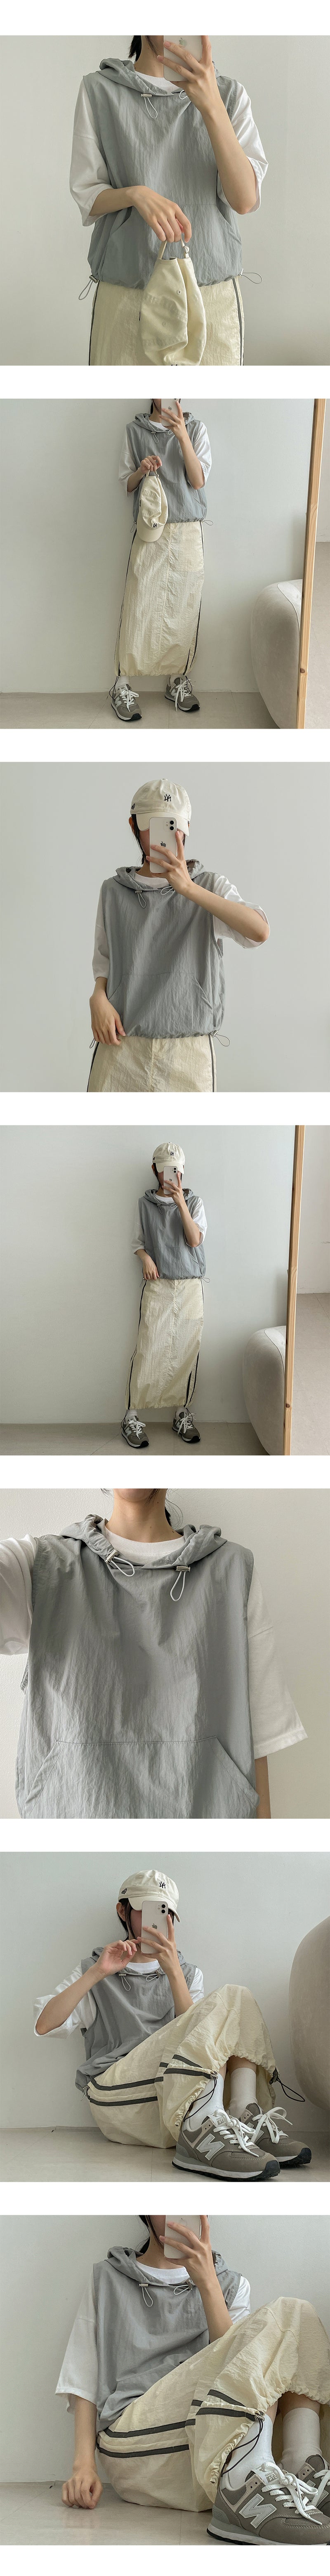 裾紐ナイロンラインバンディングロングスカート – 60% - SIXTYPERCENT